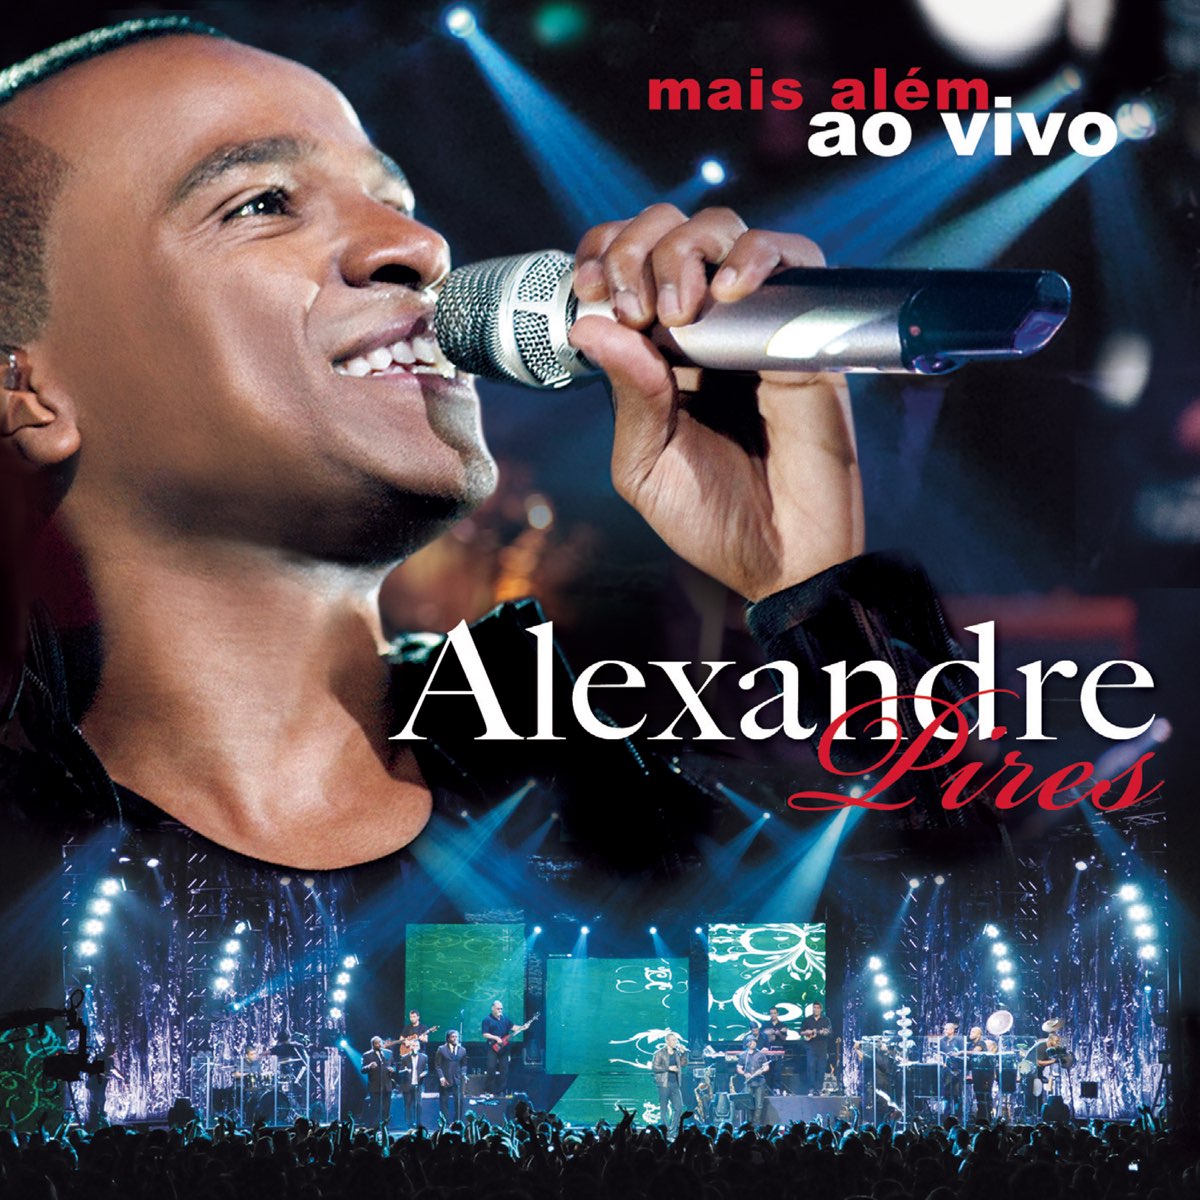 Alexandre Pires - Samba - Sua Música - Sua Música